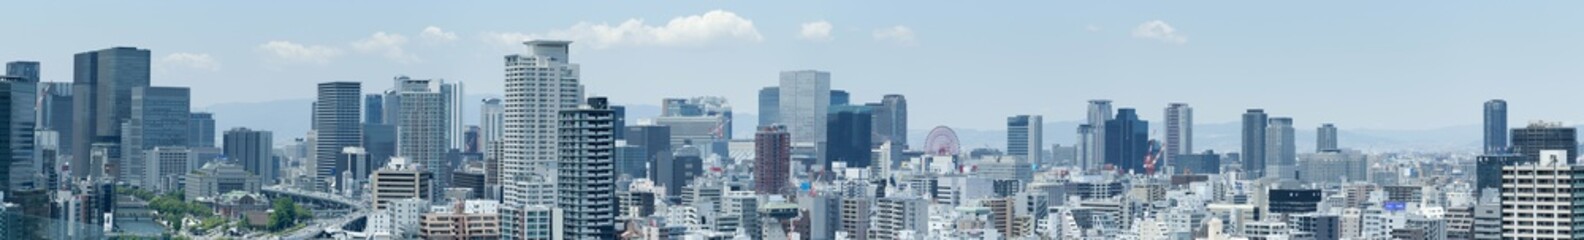 Obraz premium 都市風景 日本 大阪